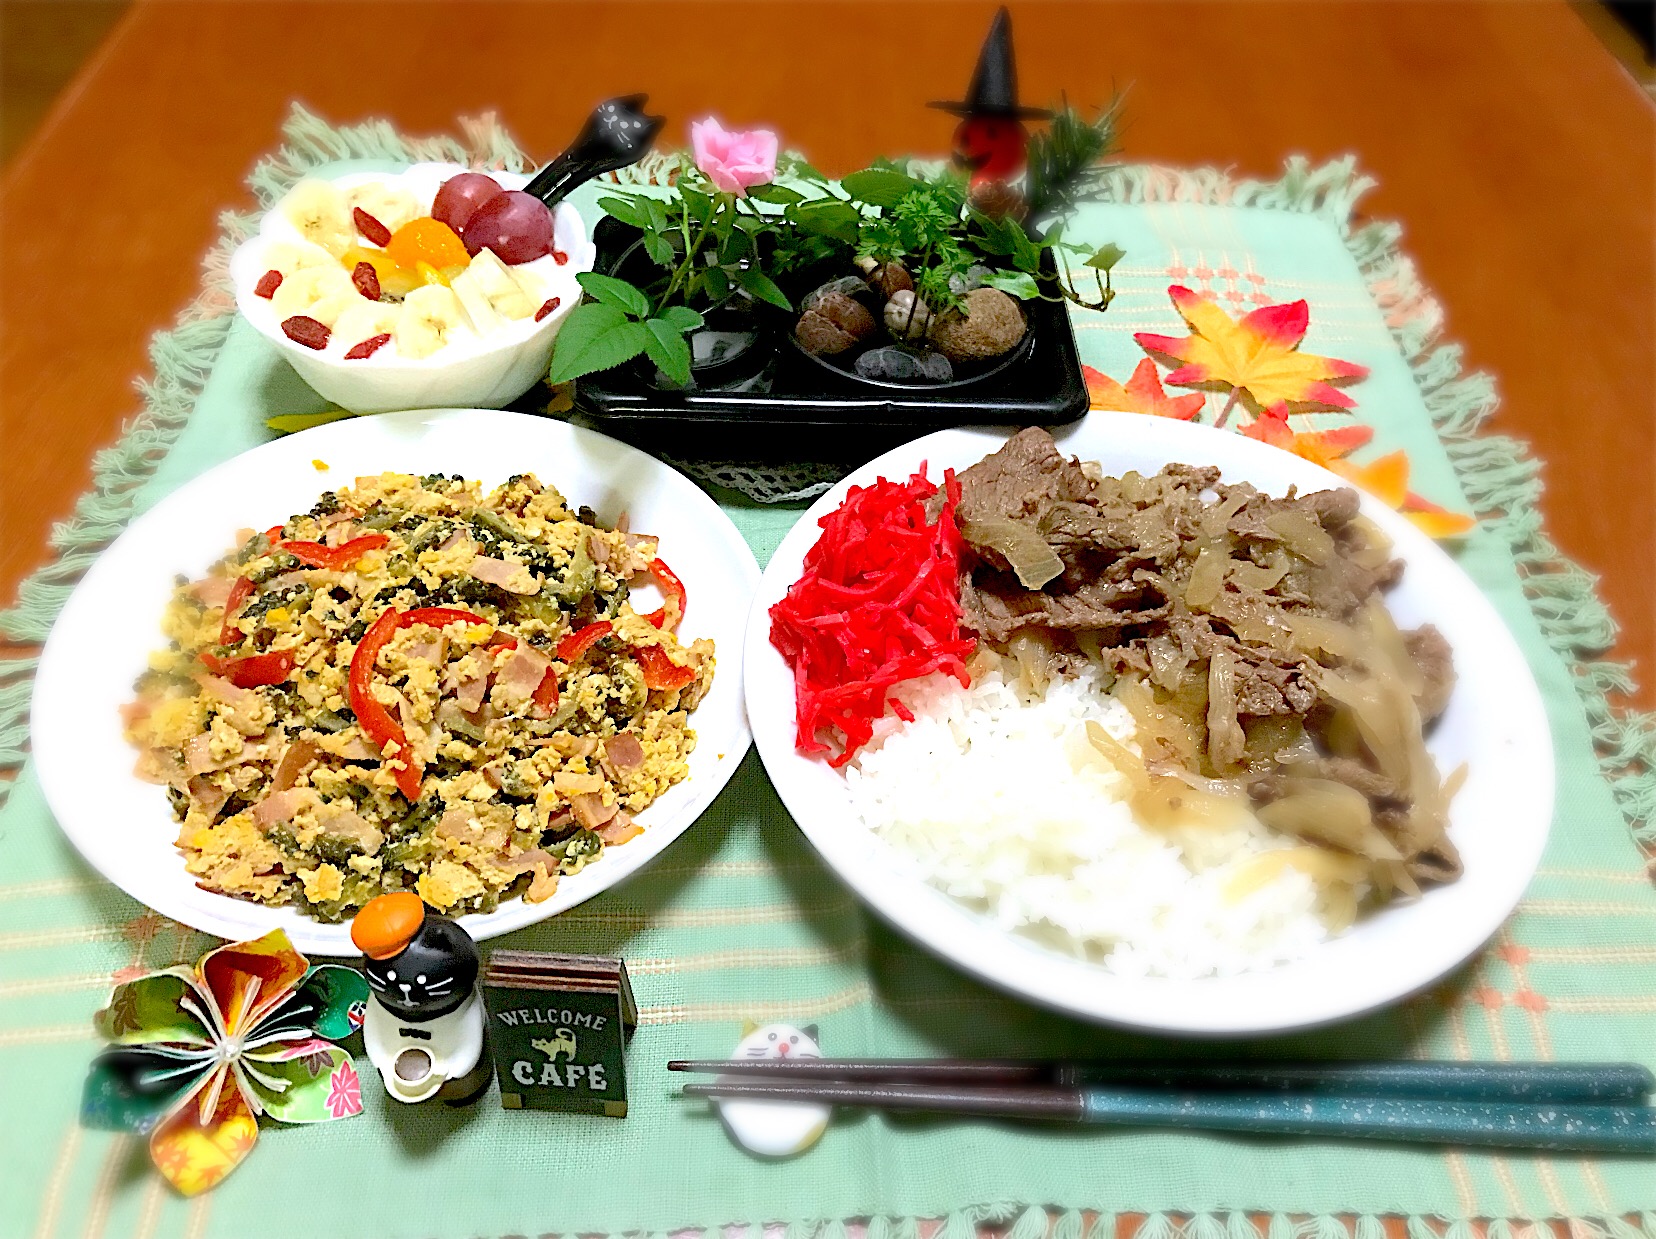 息子の夕飯🥢💦
ゴーヤチャンプル&牛丼ドーン❗️